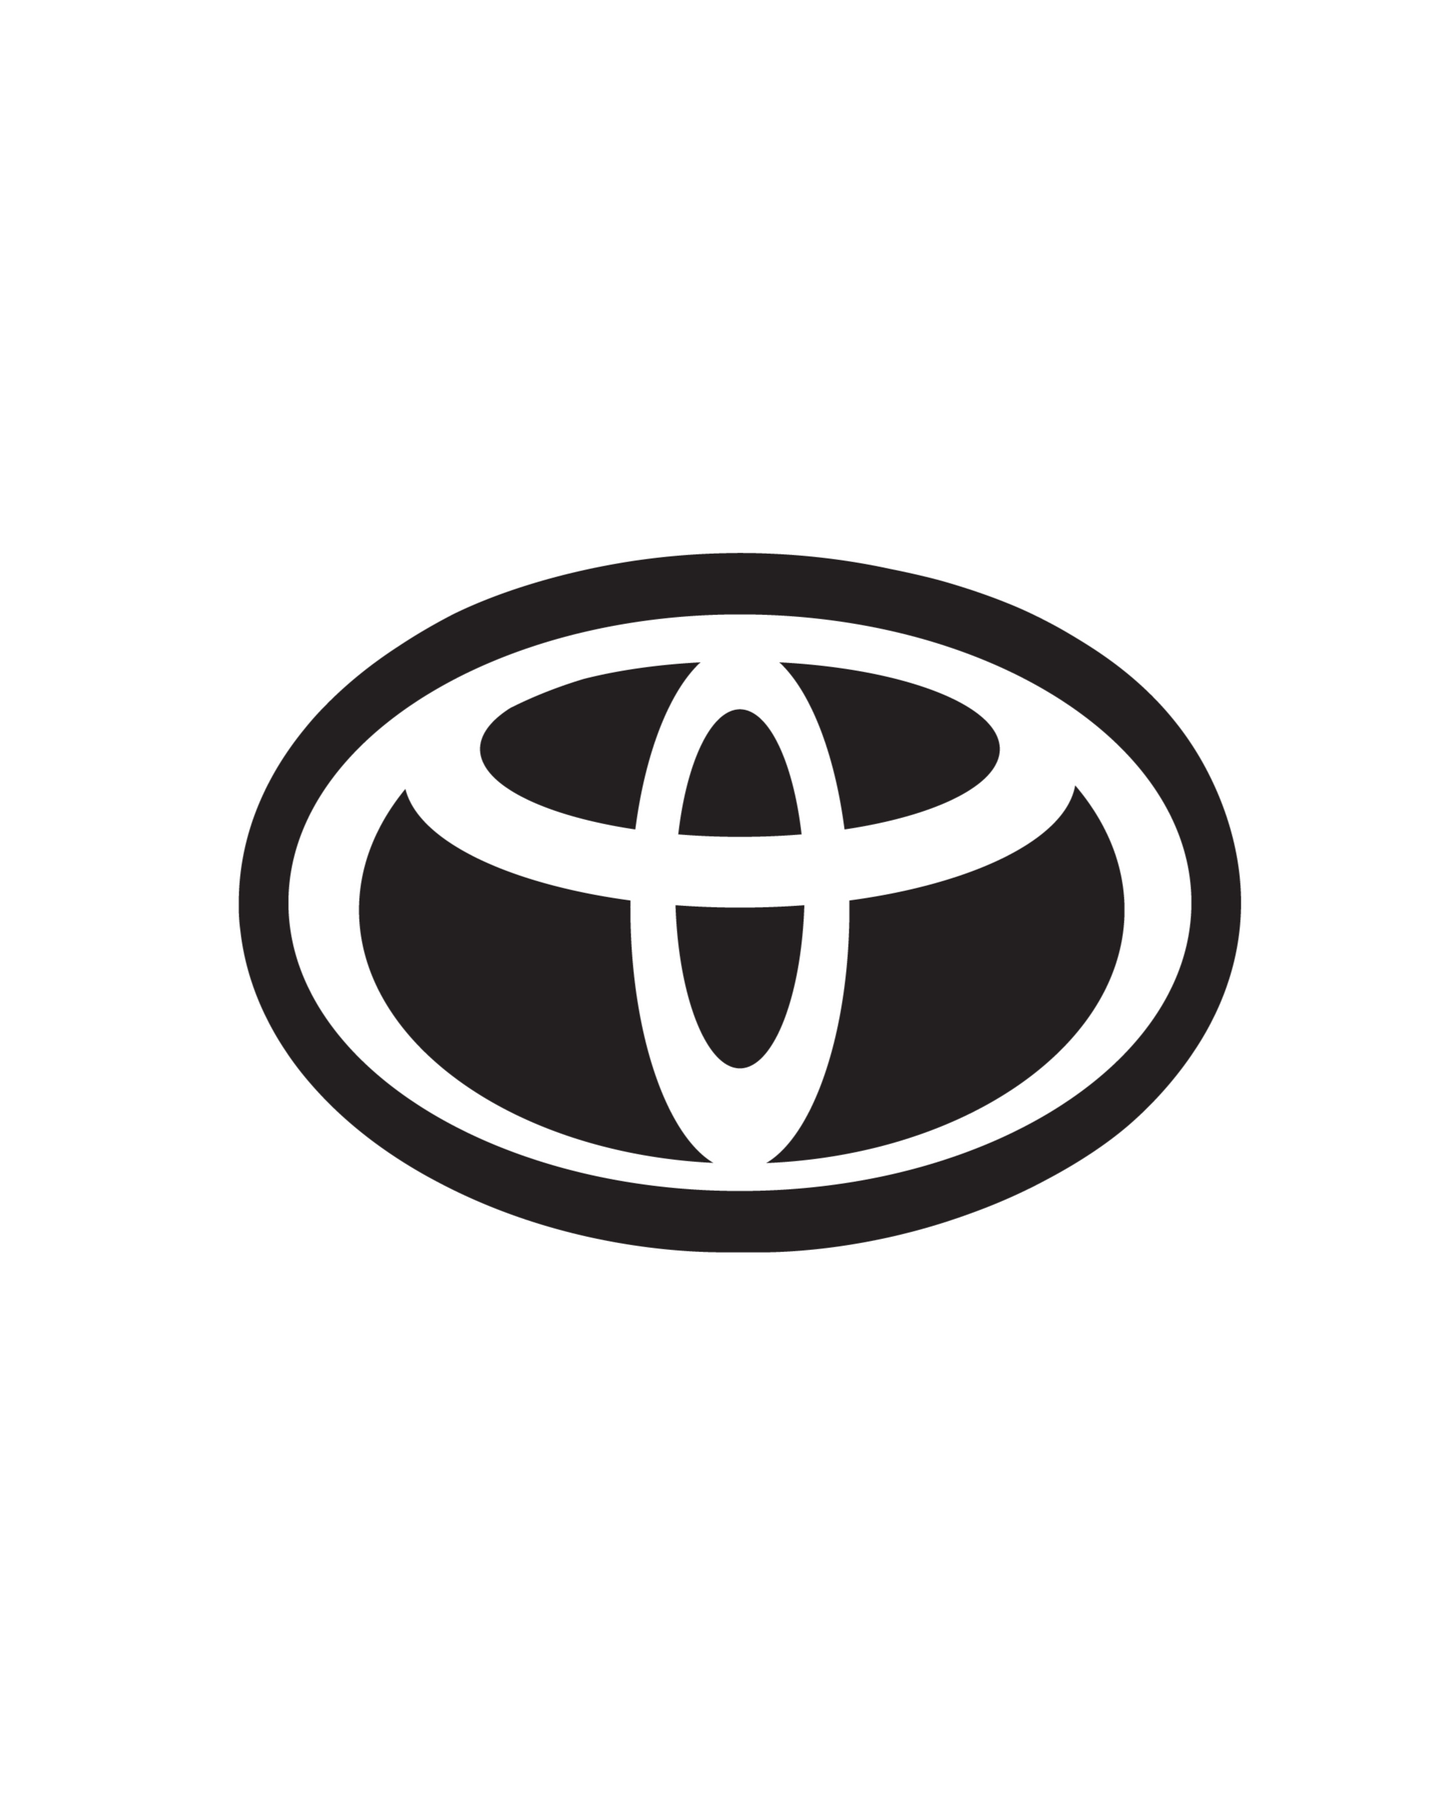 2018-2023 Toyota Tacoma Front Emblem Vinyl Overlay